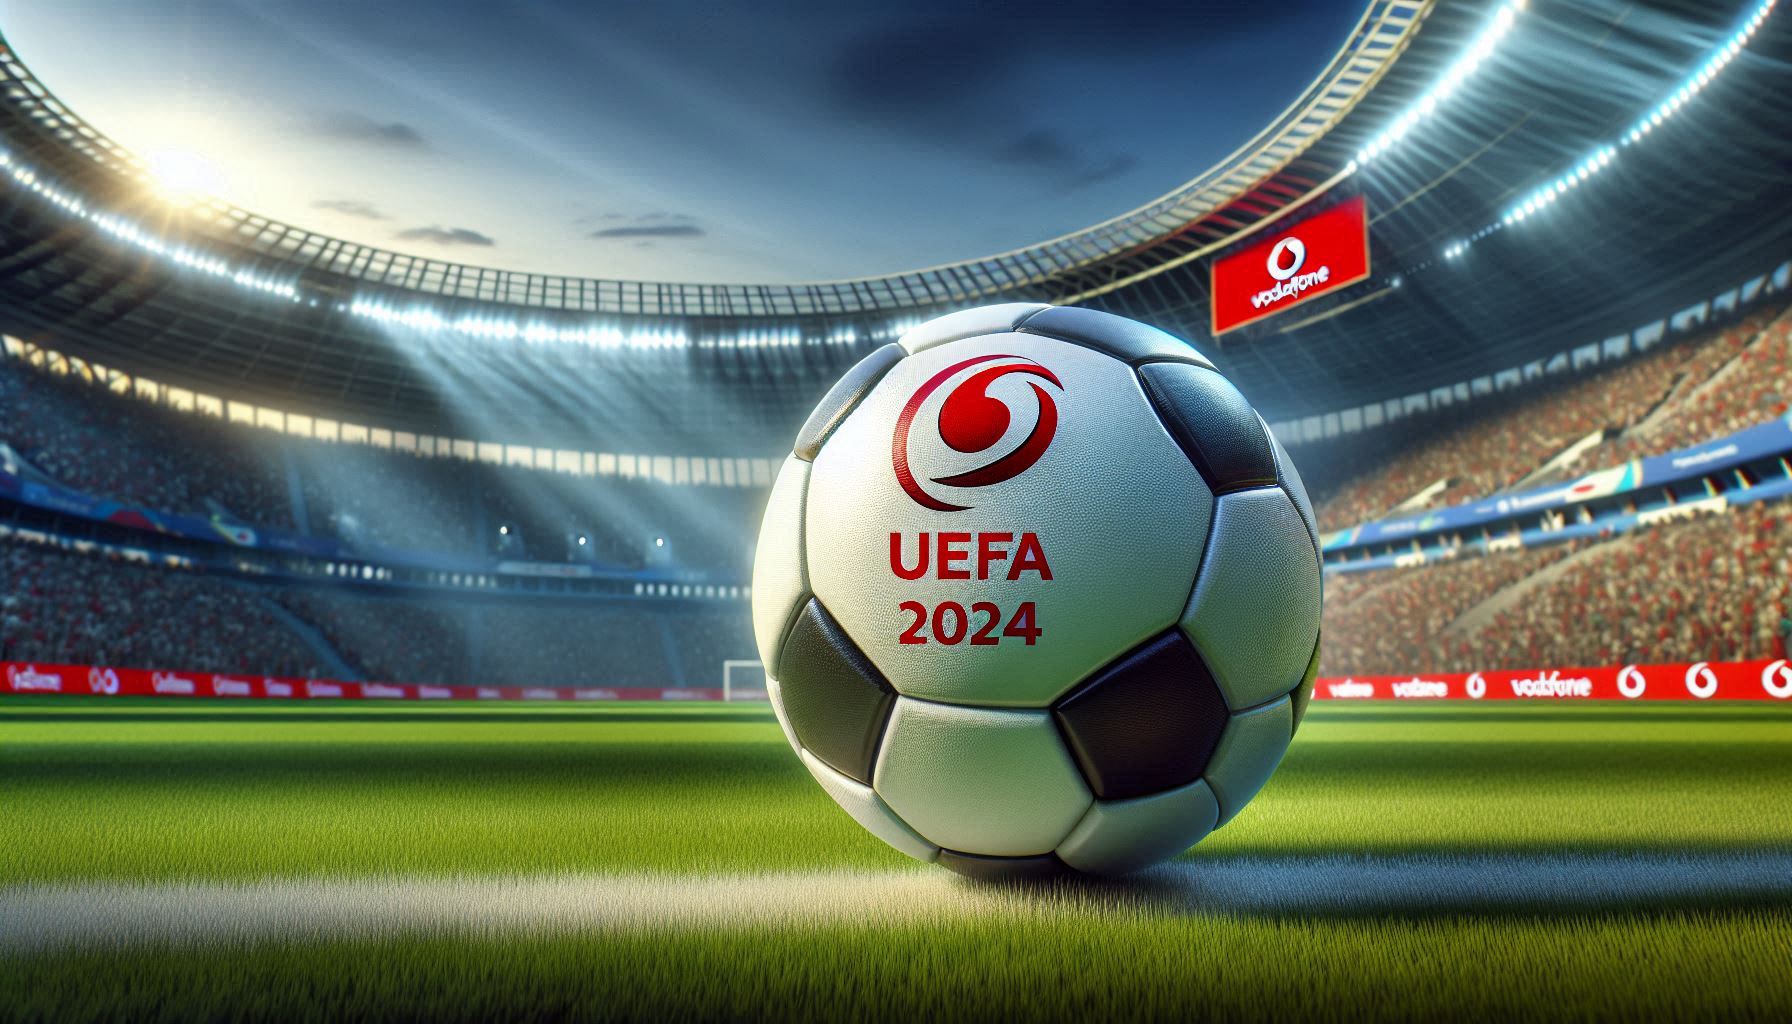 Vodafone Fussball EM 2024: Erste Kabel-TV-Datenanalyse zur EM-Vorrunde